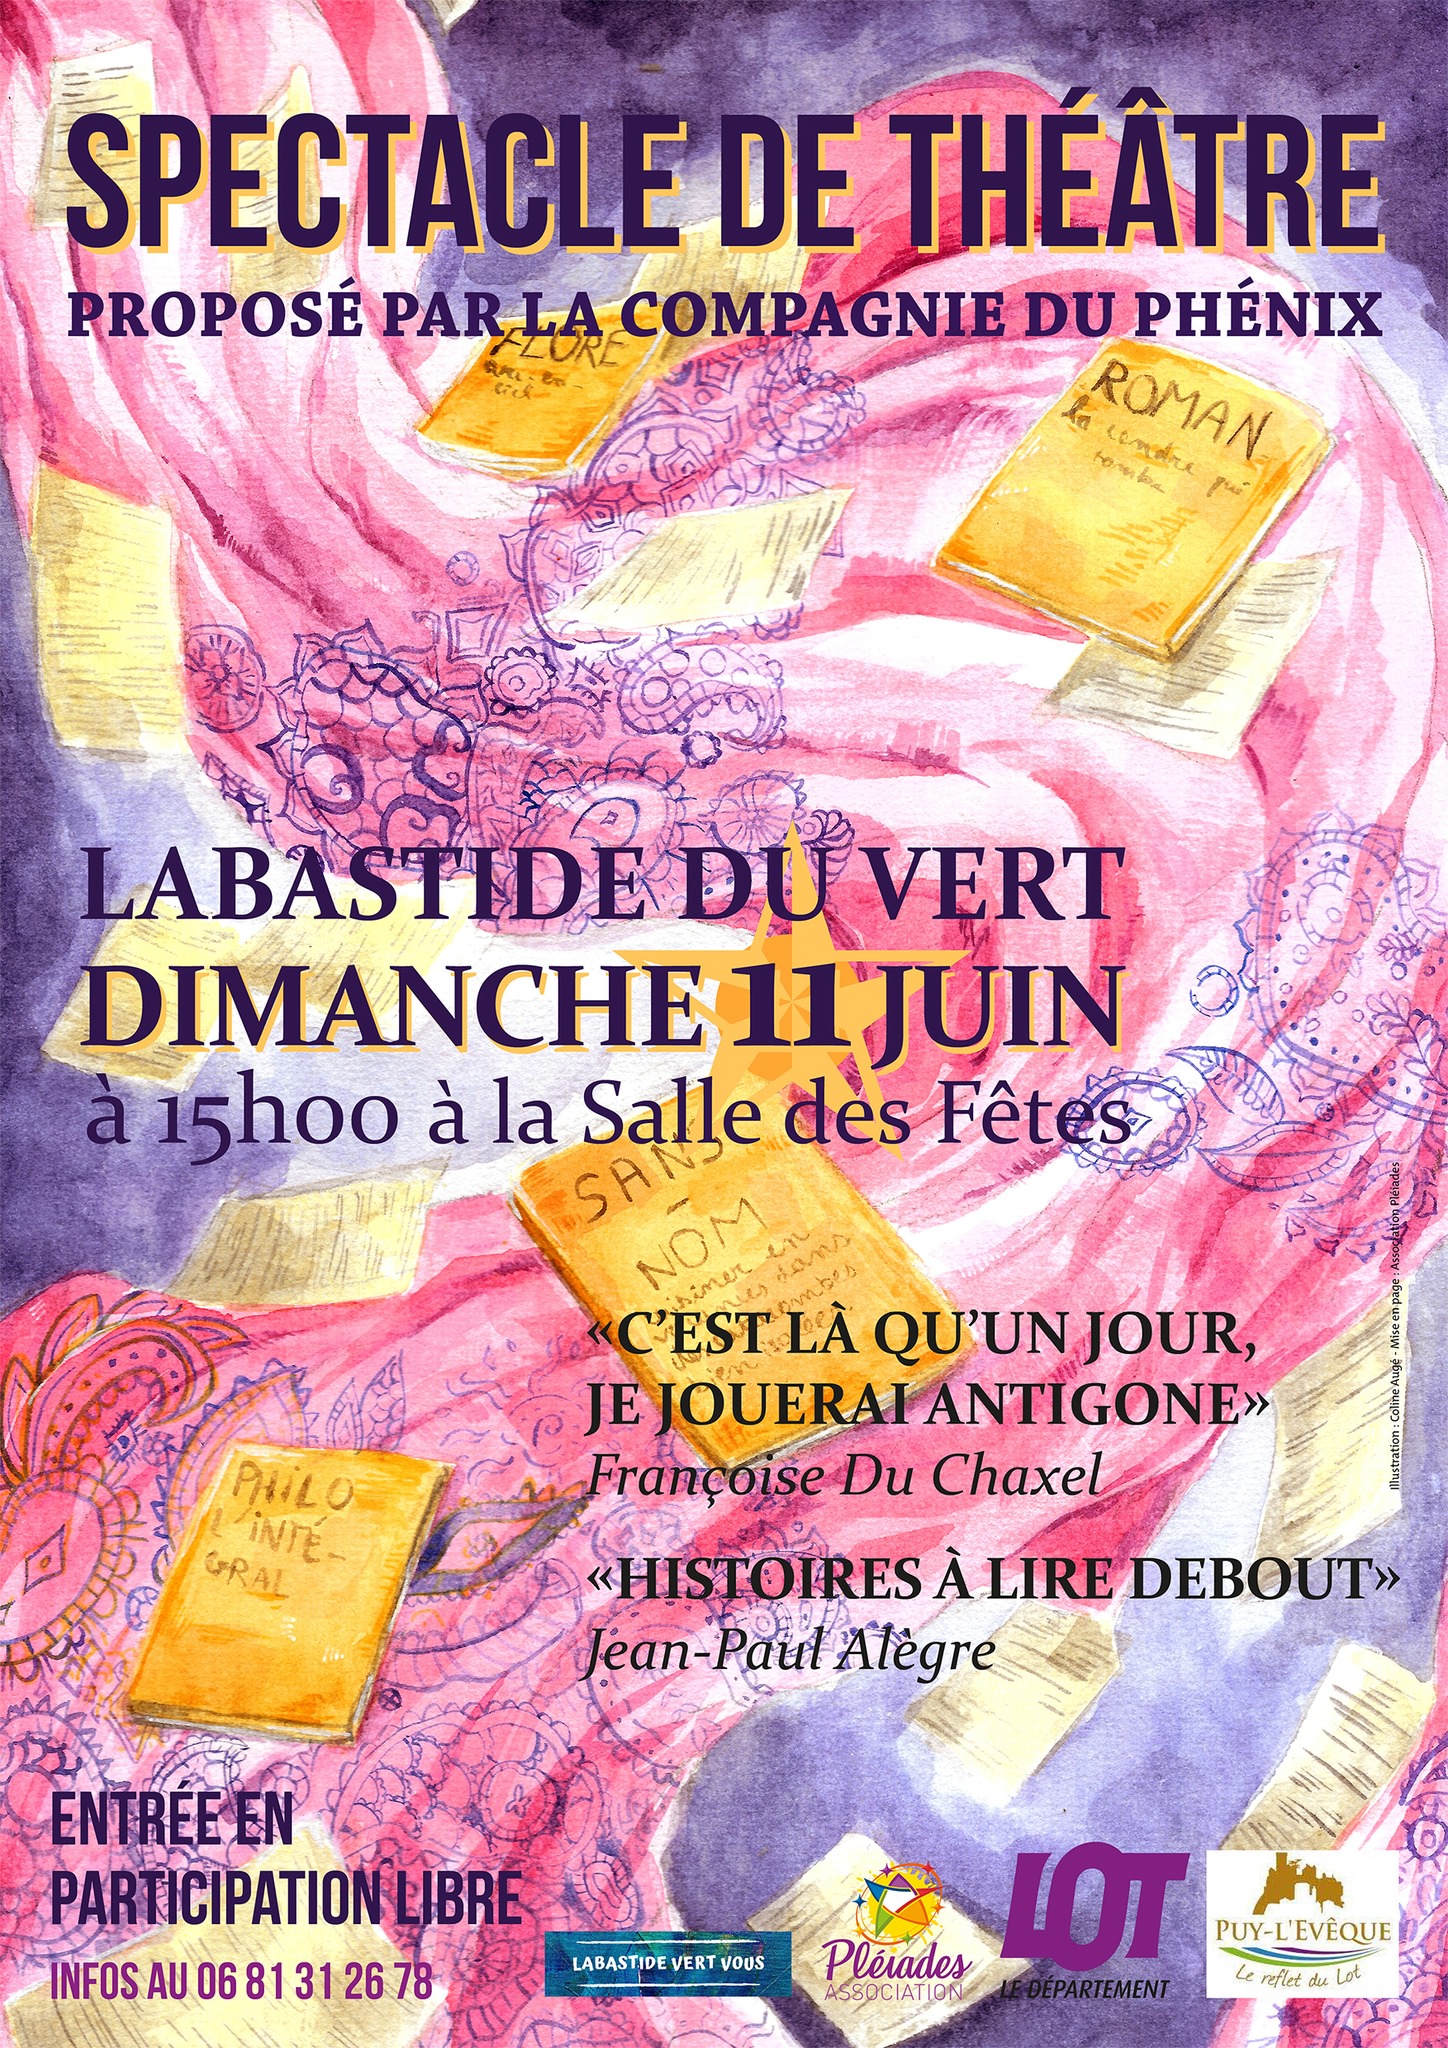 Figeac : Spectacle de Théâtre de la Compagnie du Phénix à Labastide-du-Vert